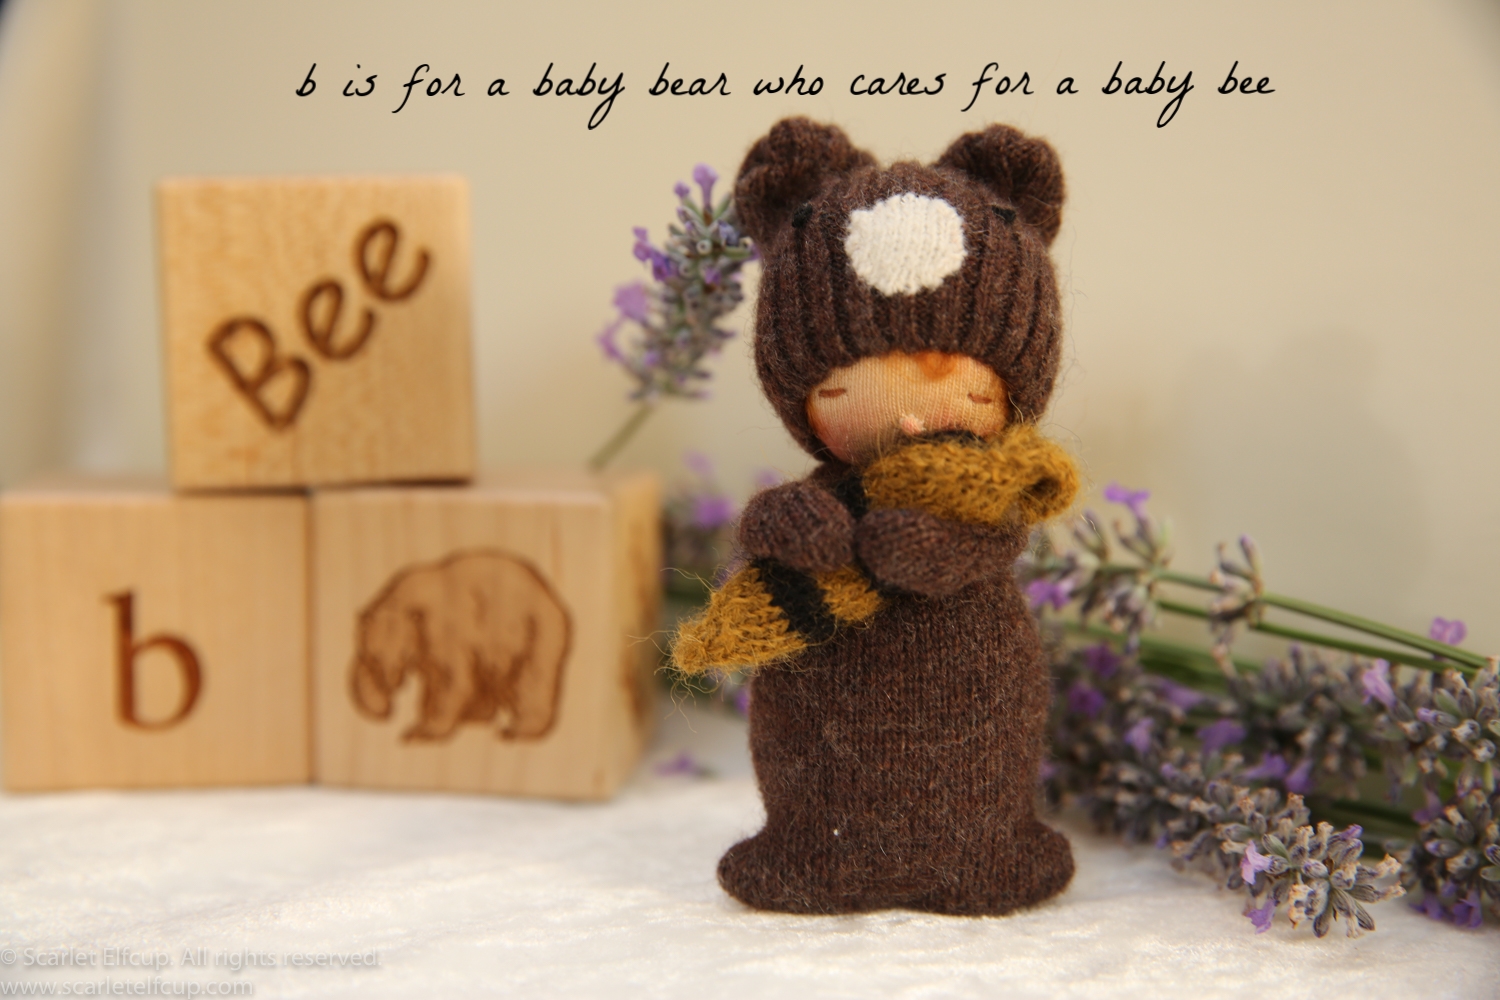 Baby Bear, a 4" Yummy Tummy Baby Elfcup